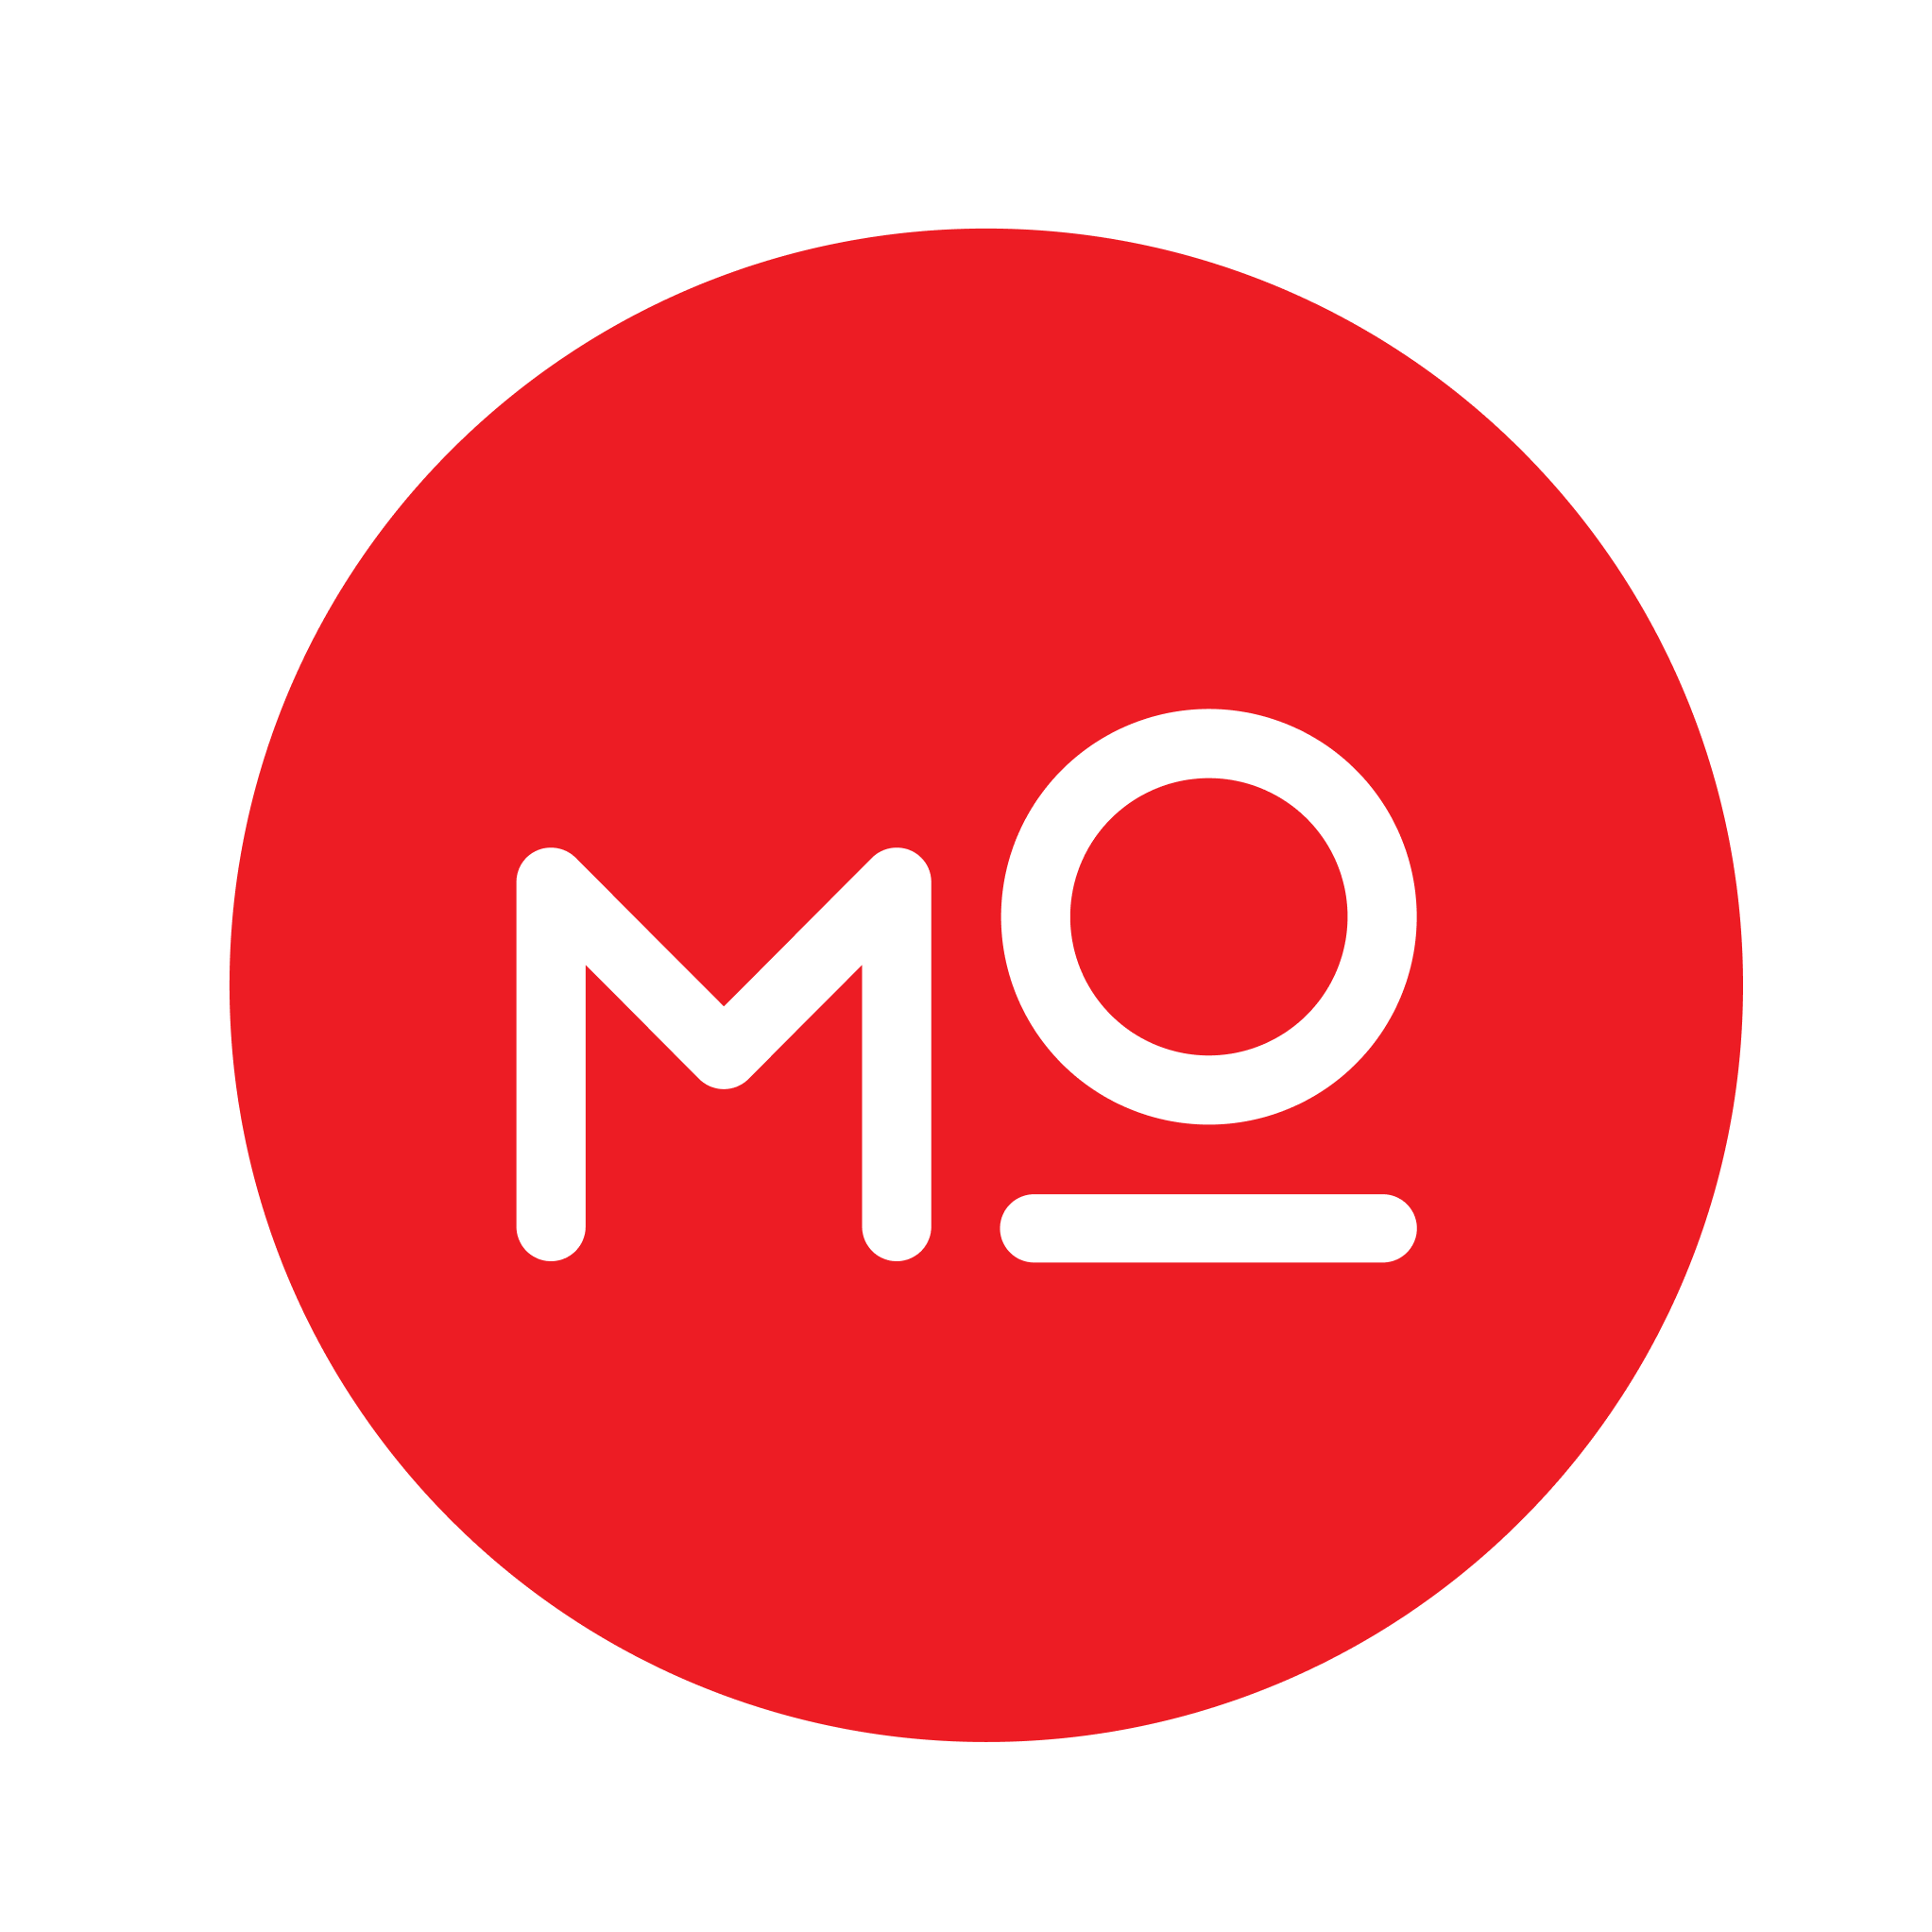 Modash Logo